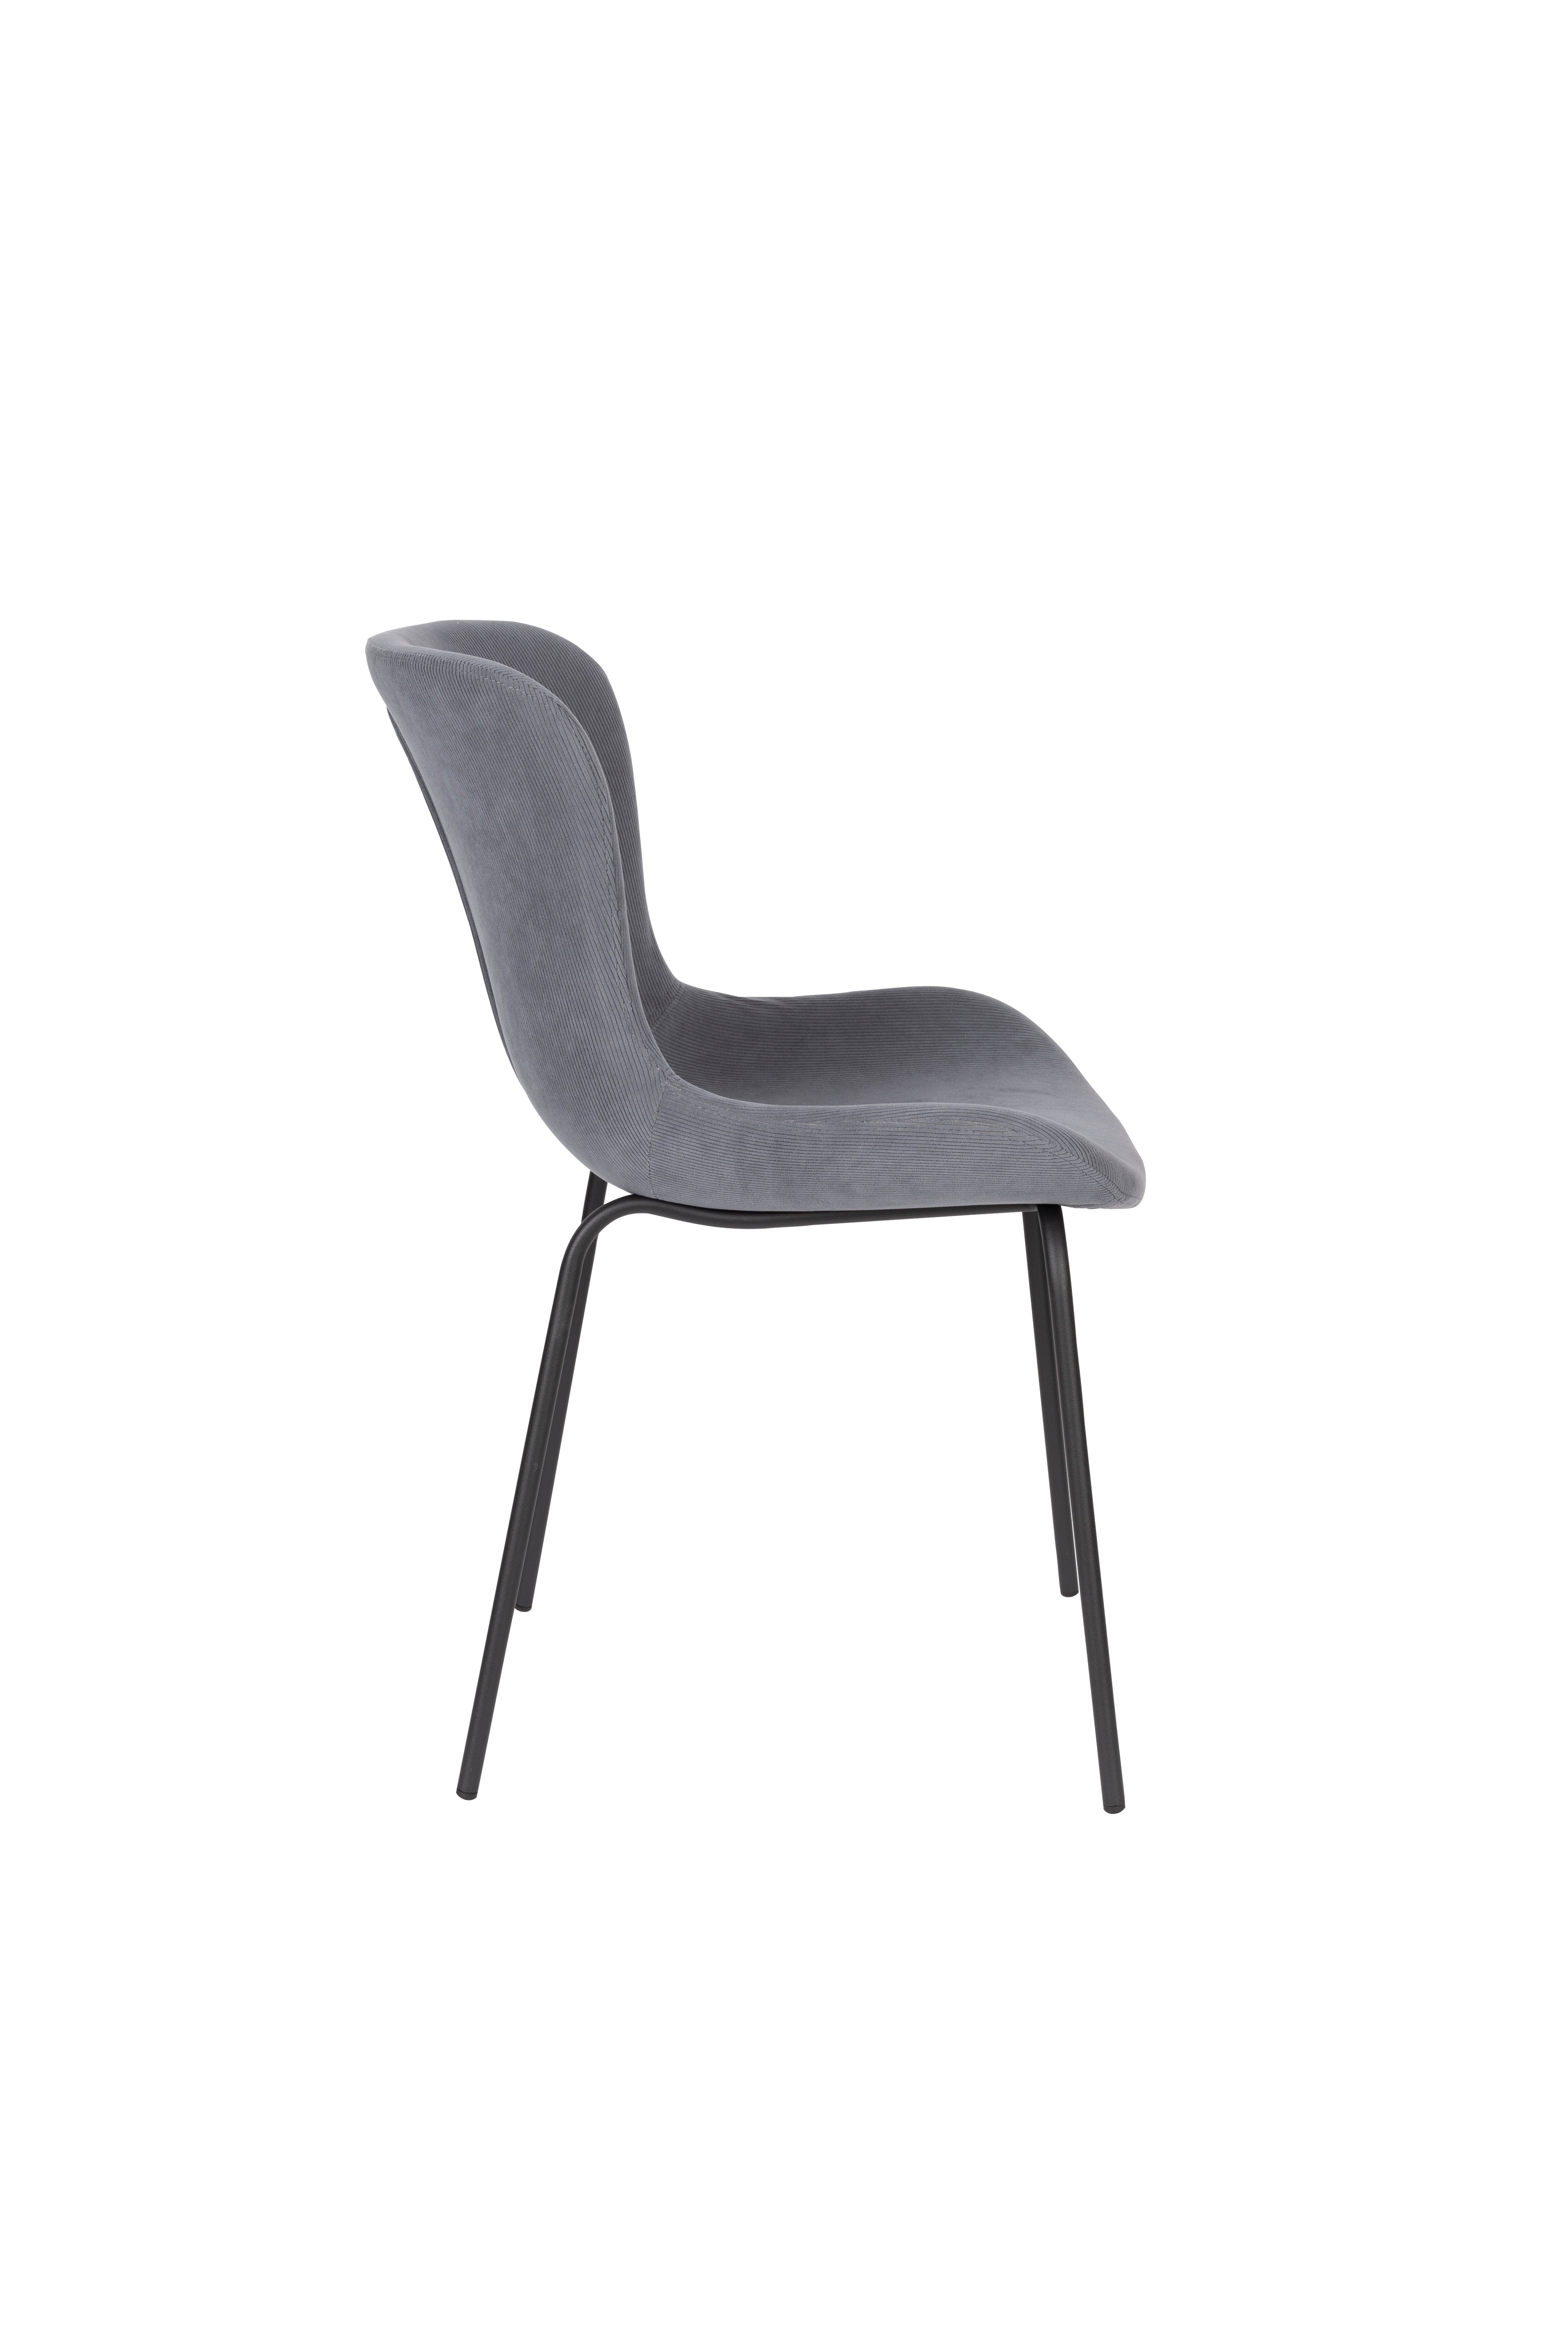 Stuhl Junzo Rib in Blau präsentiert im Onlineshop von KAQTU Design AG. Stuhl ist von White Label Living